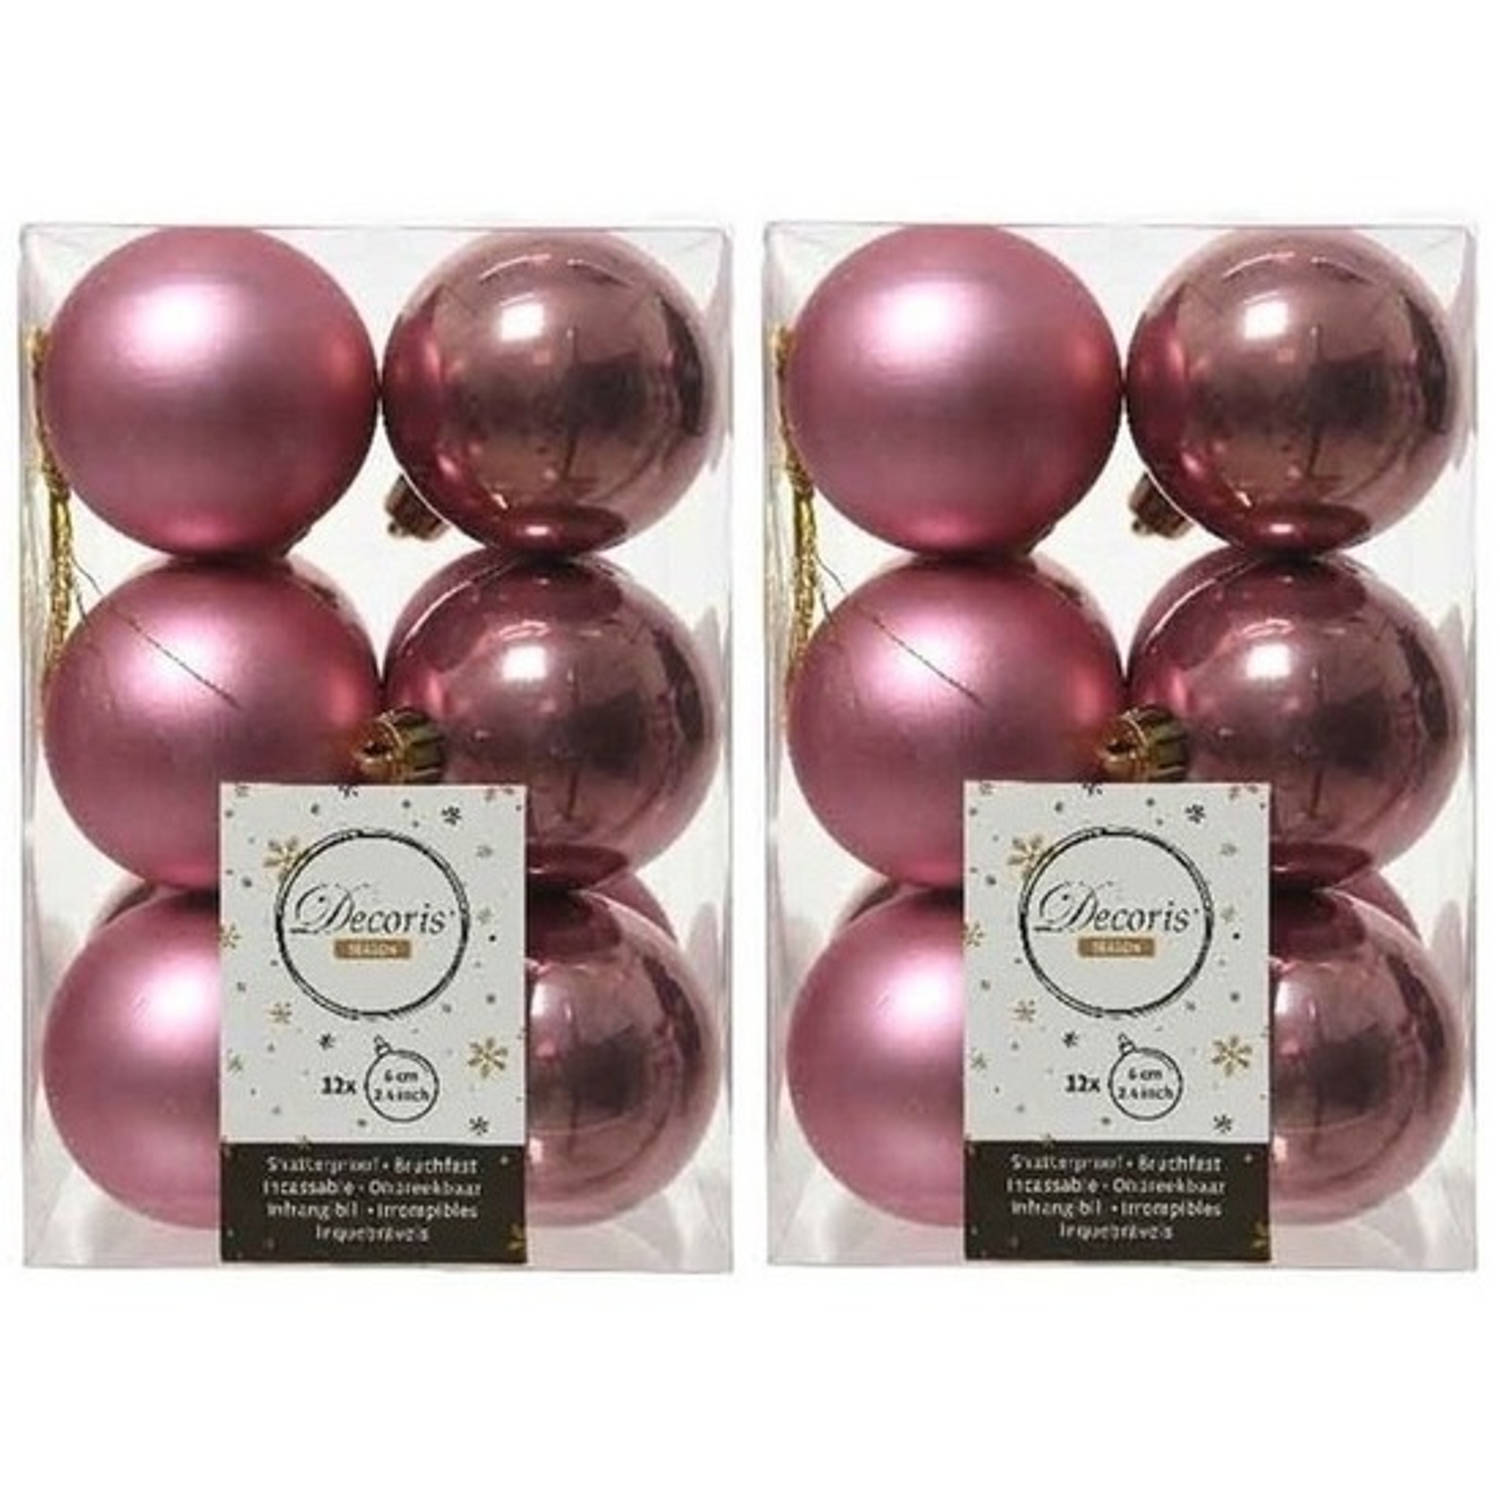 24x Kunststof kerstballen glanzend/mat oud roze 6 cm kerstboom versiering/decoratie - Kerstbal